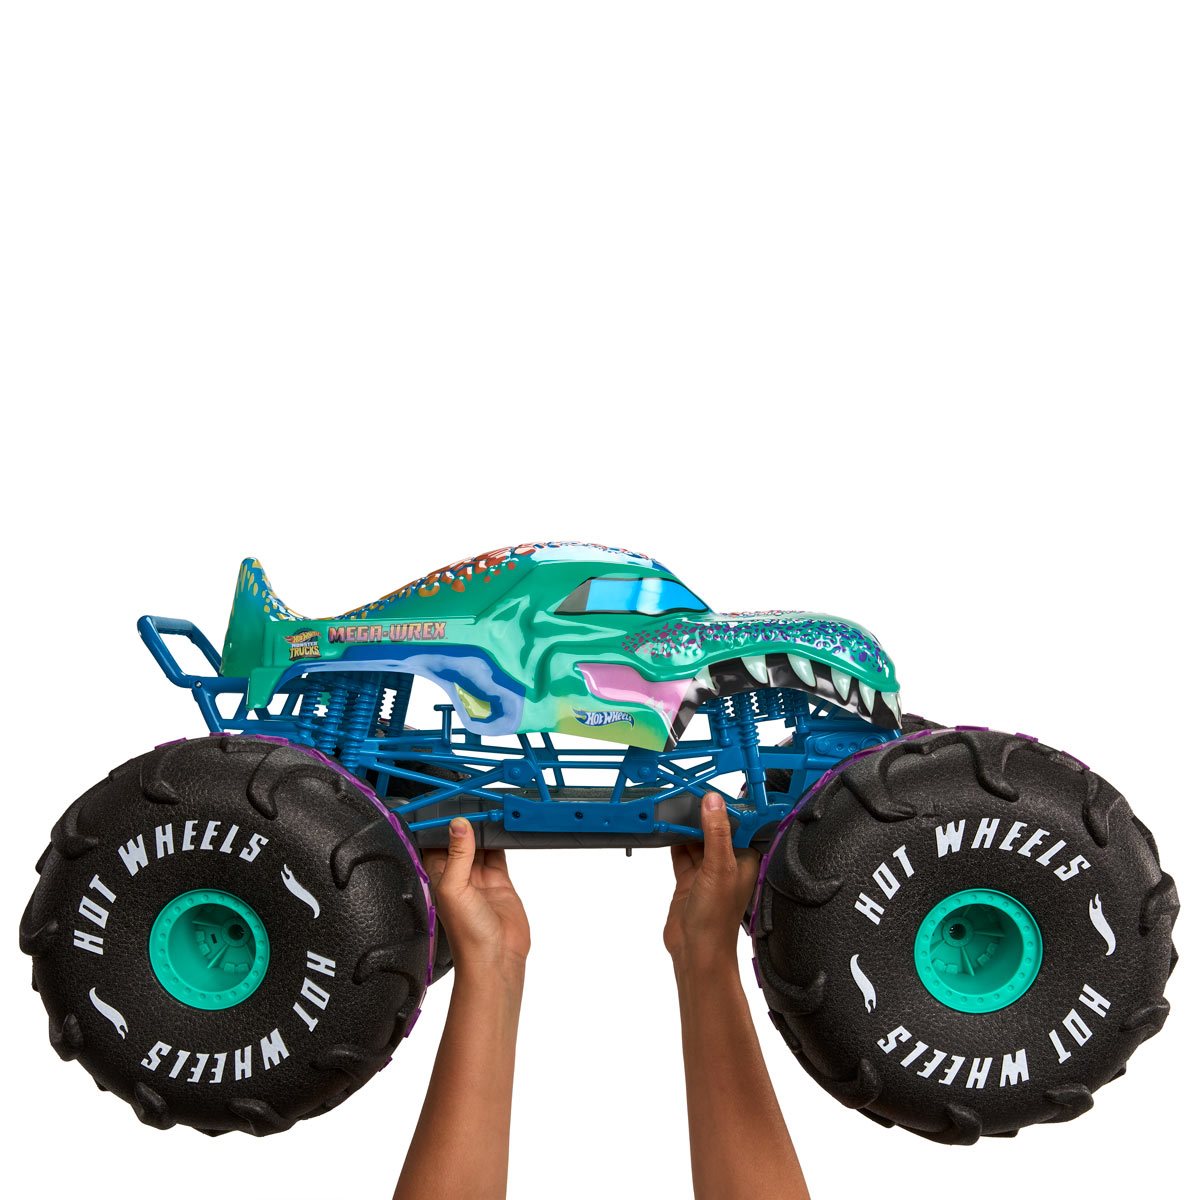 Hot Wheels® Monster Trucks Mega-Wrex® Vehicle